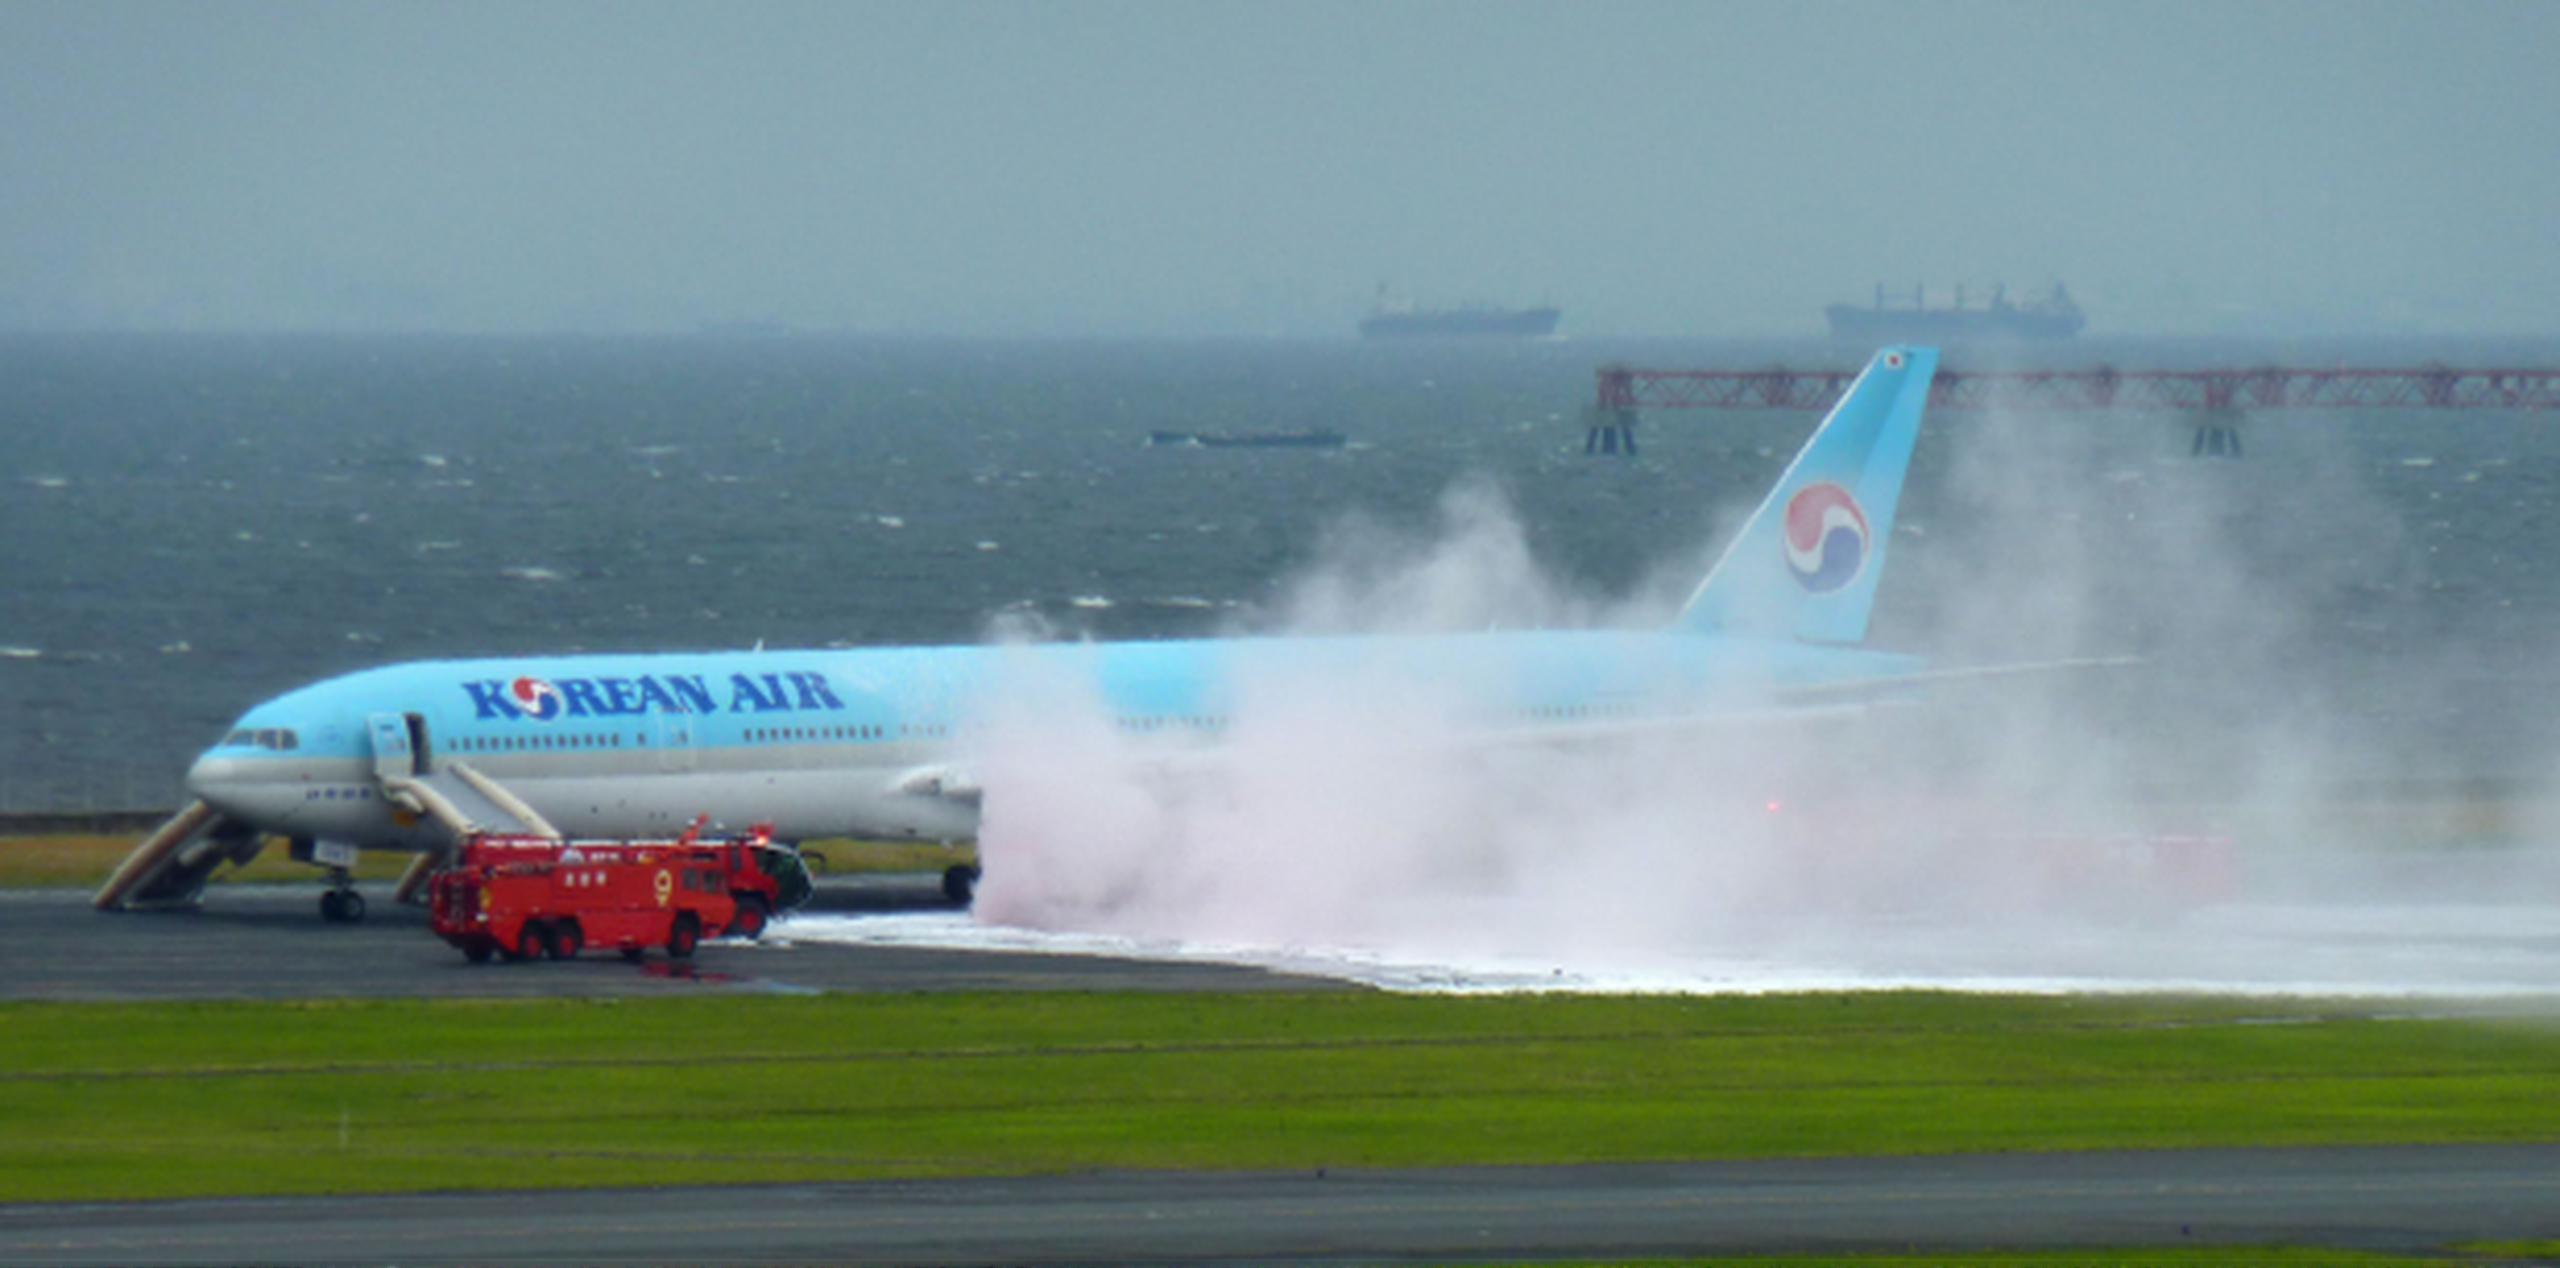 Bomberos se apreuran a apagar el fuego en uno de los motores de la areonave de Korean Air que se accidentó en la pista del aeropuerto de Haneda, en Tokio. (AP)